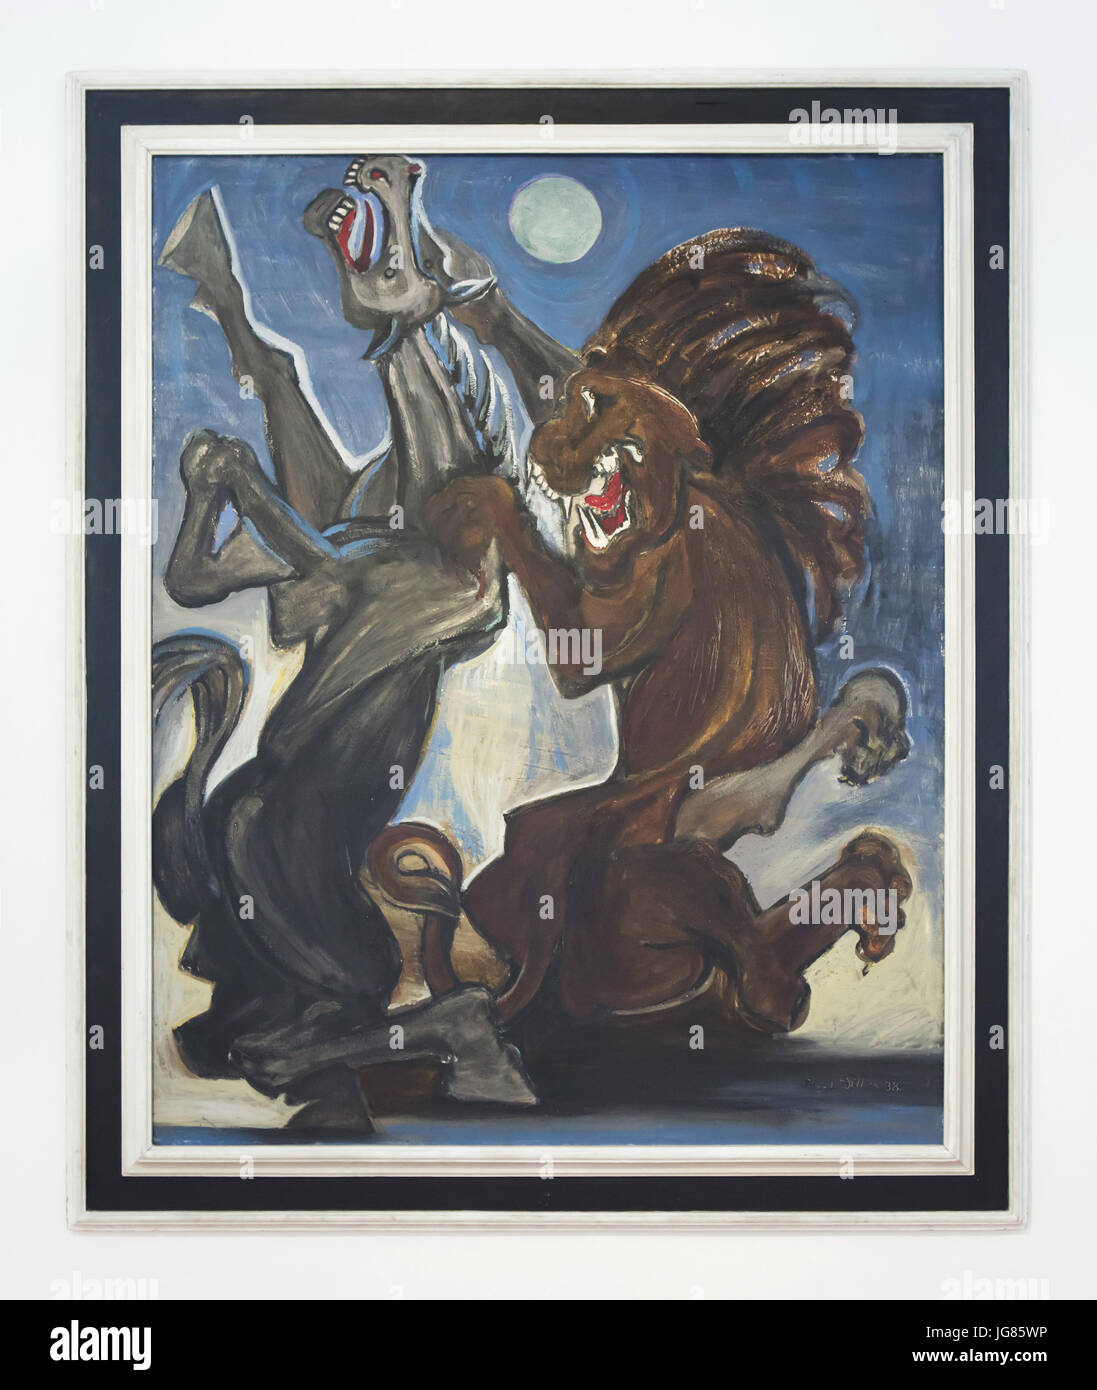 Peinture 'cheval attaqué par un Lion' (1938) en République tchèque Emil Filla peintre moderniste sur l'affichage dans la Galerie de Bohême centrale (GASK) à Kutná Hora, République tchèque. Banque D'Images